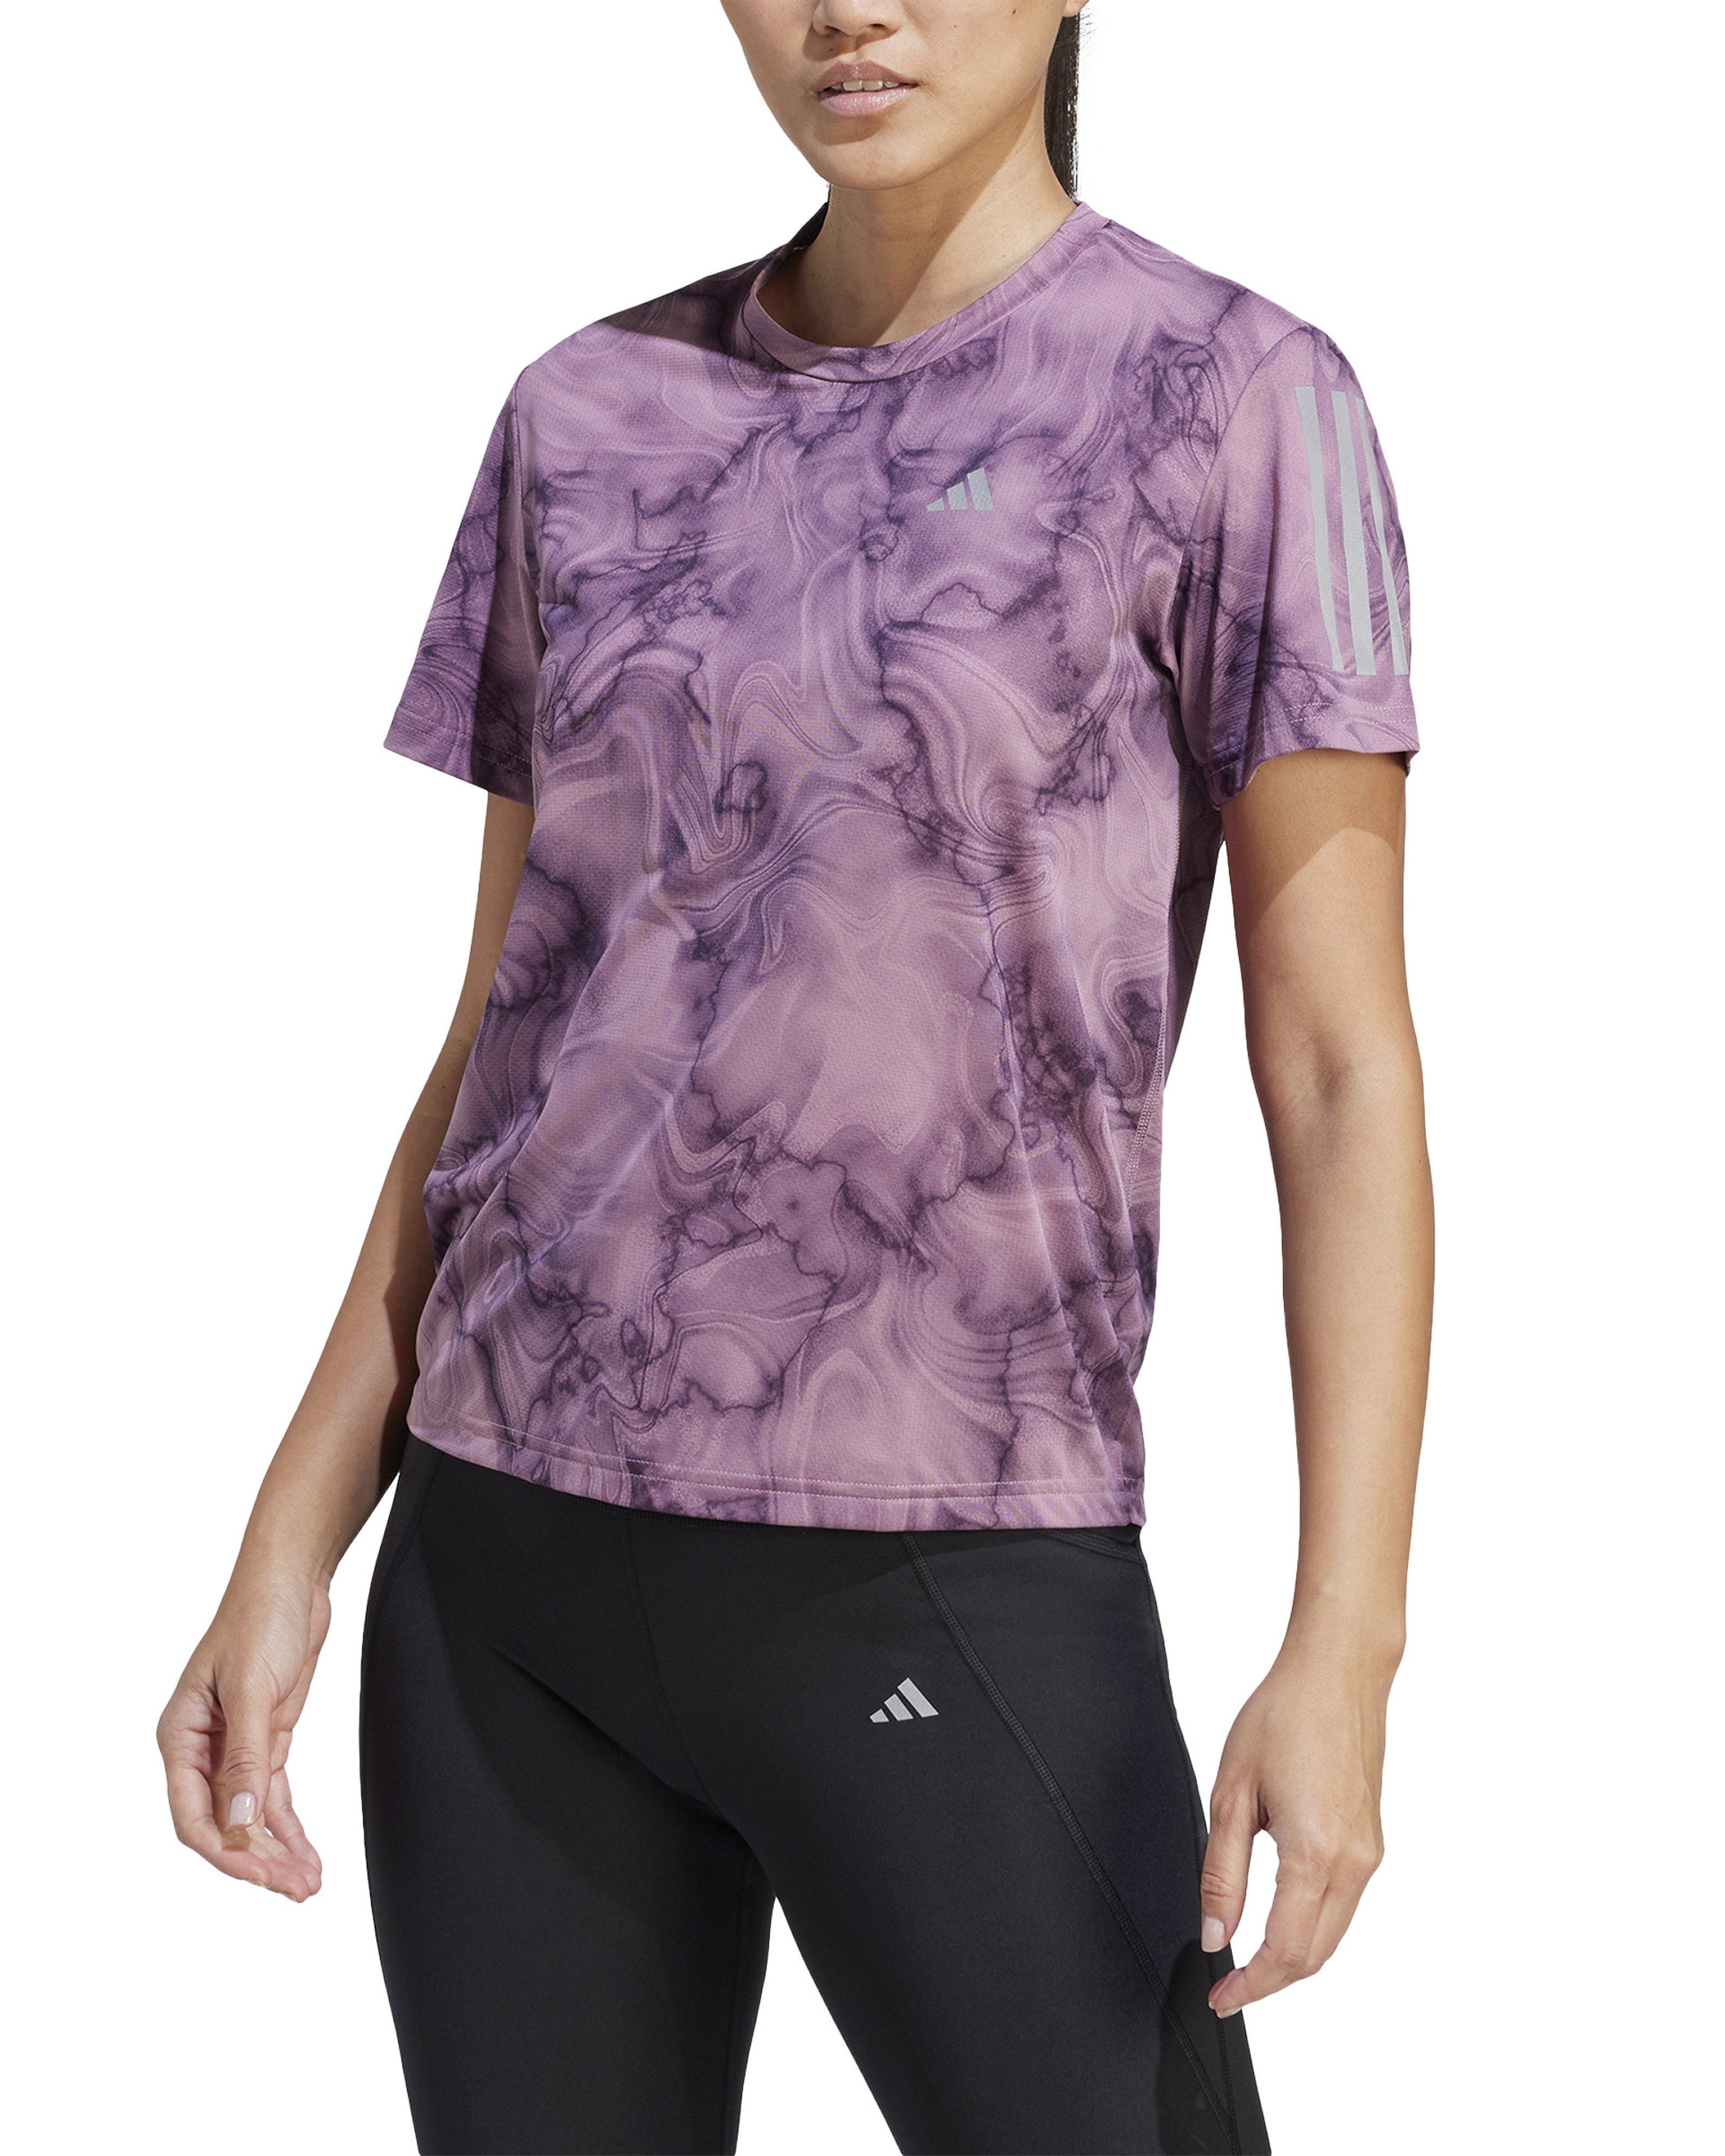 Adidas Women’s Own The Run Allover Print T-shirt -  Mauve